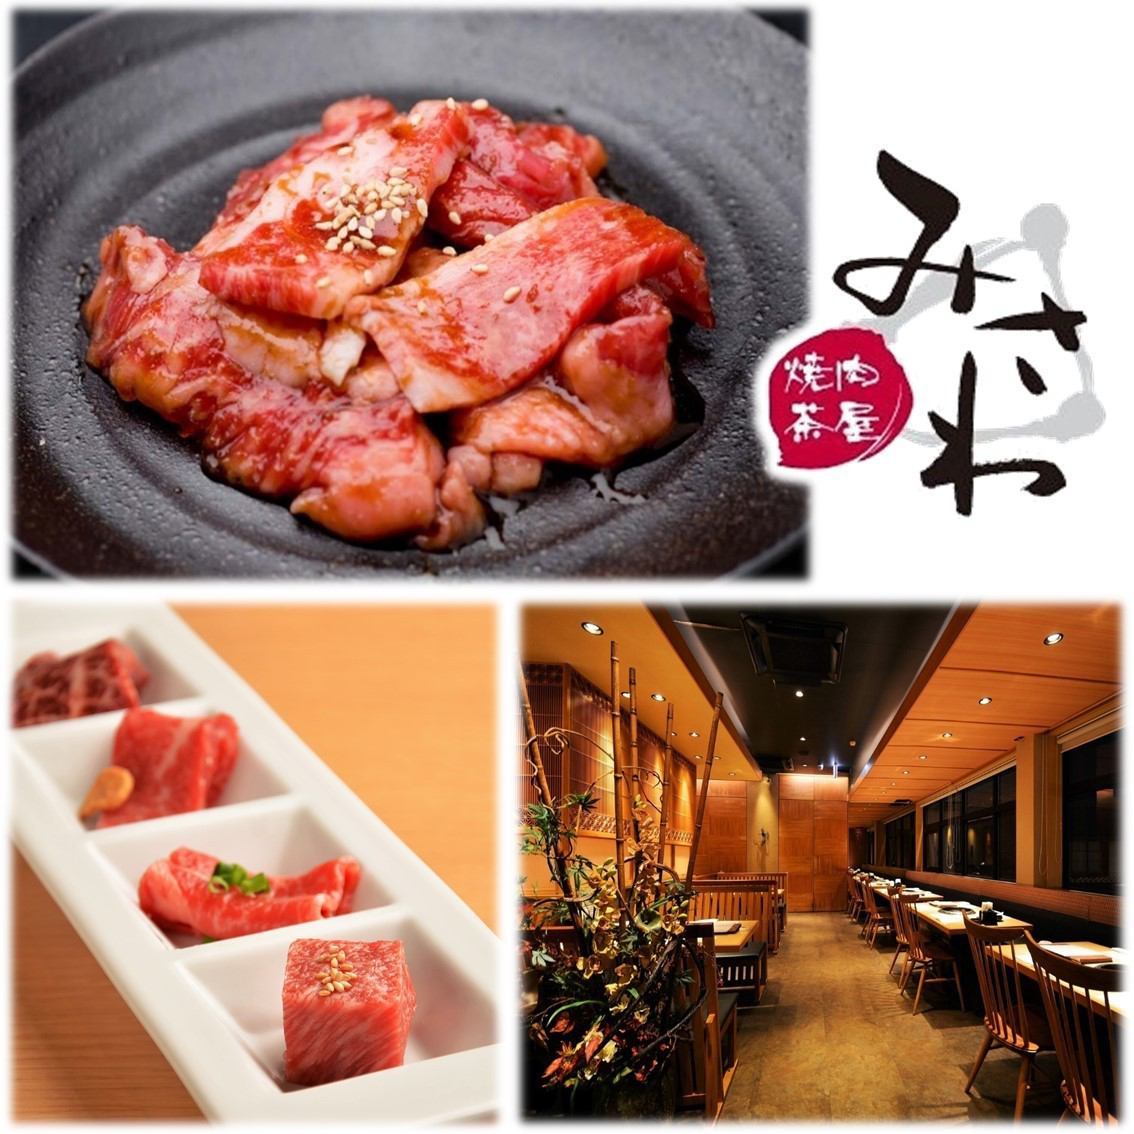 Community-based stylish yakiniku restaurant ★ Reasonably priced Japanese black beef ♪